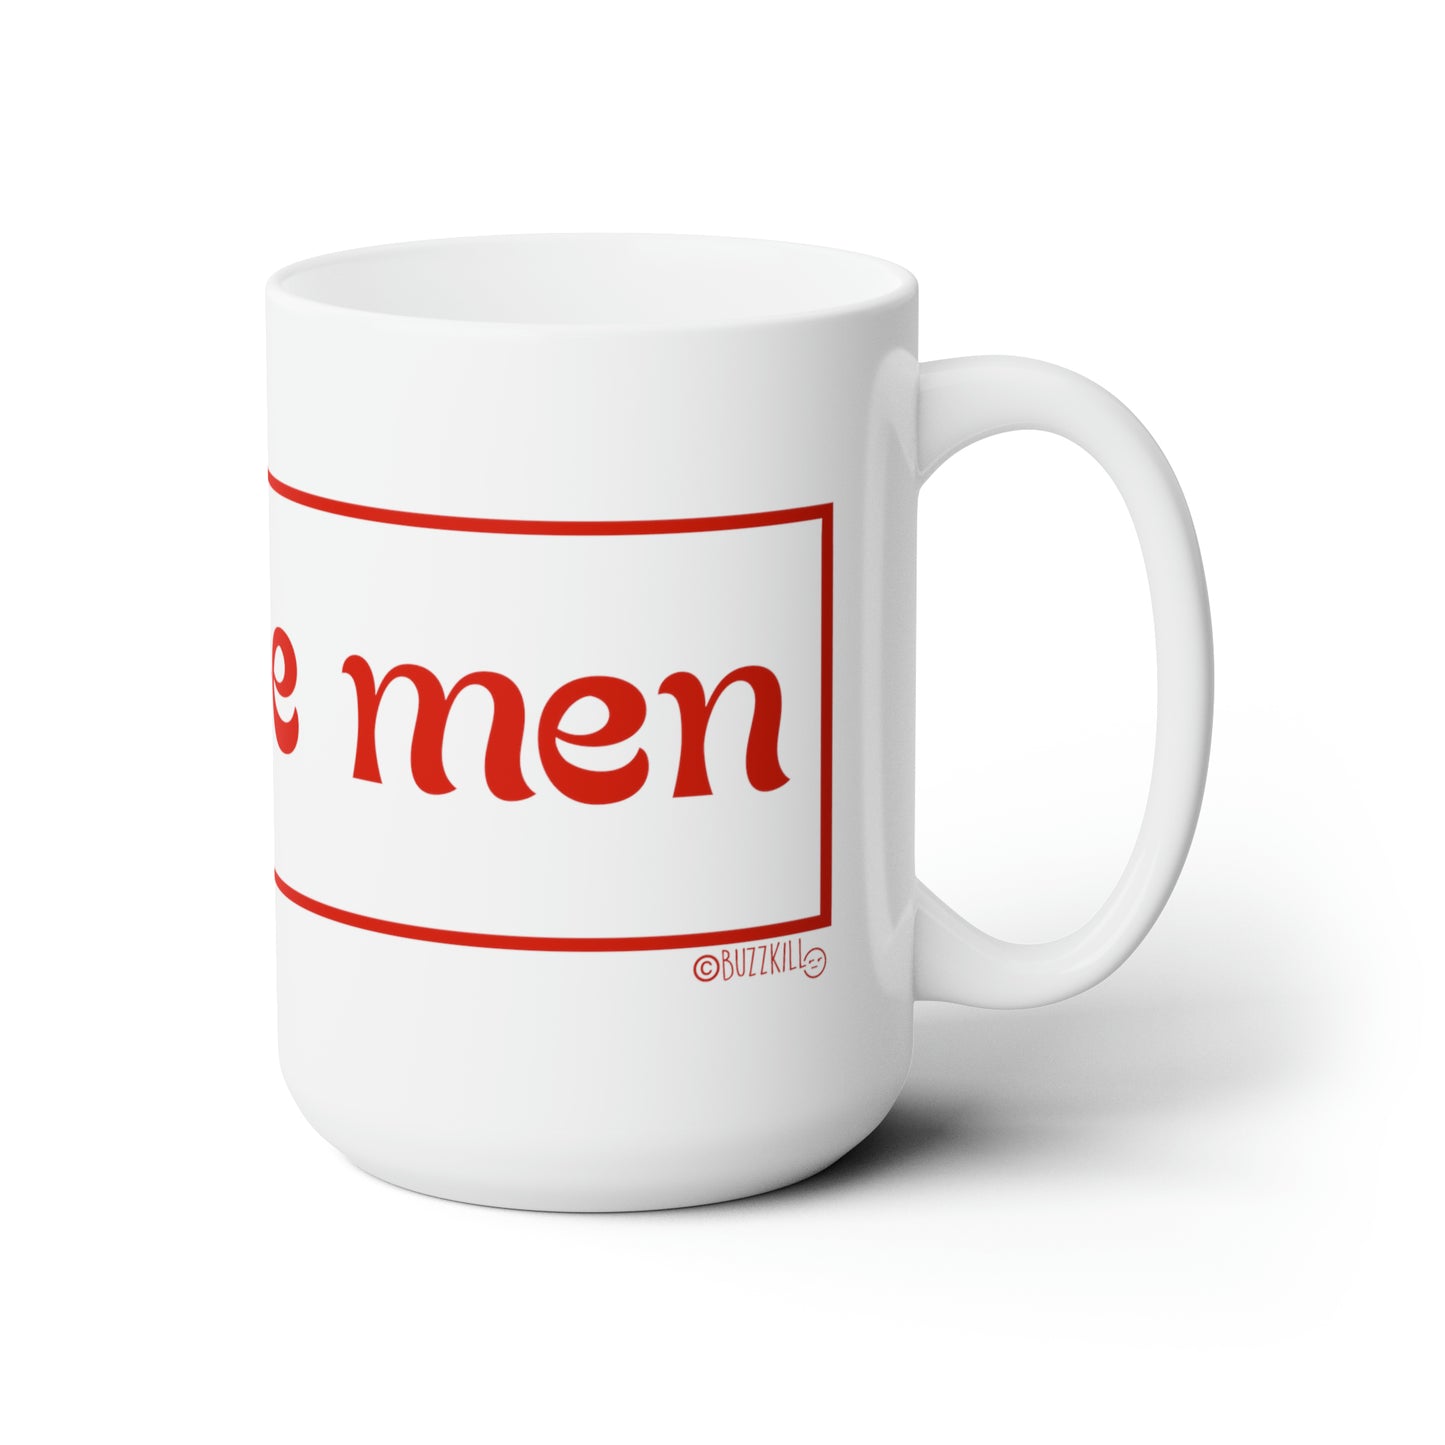 Why Are Men - Ceramic Mug 15oz